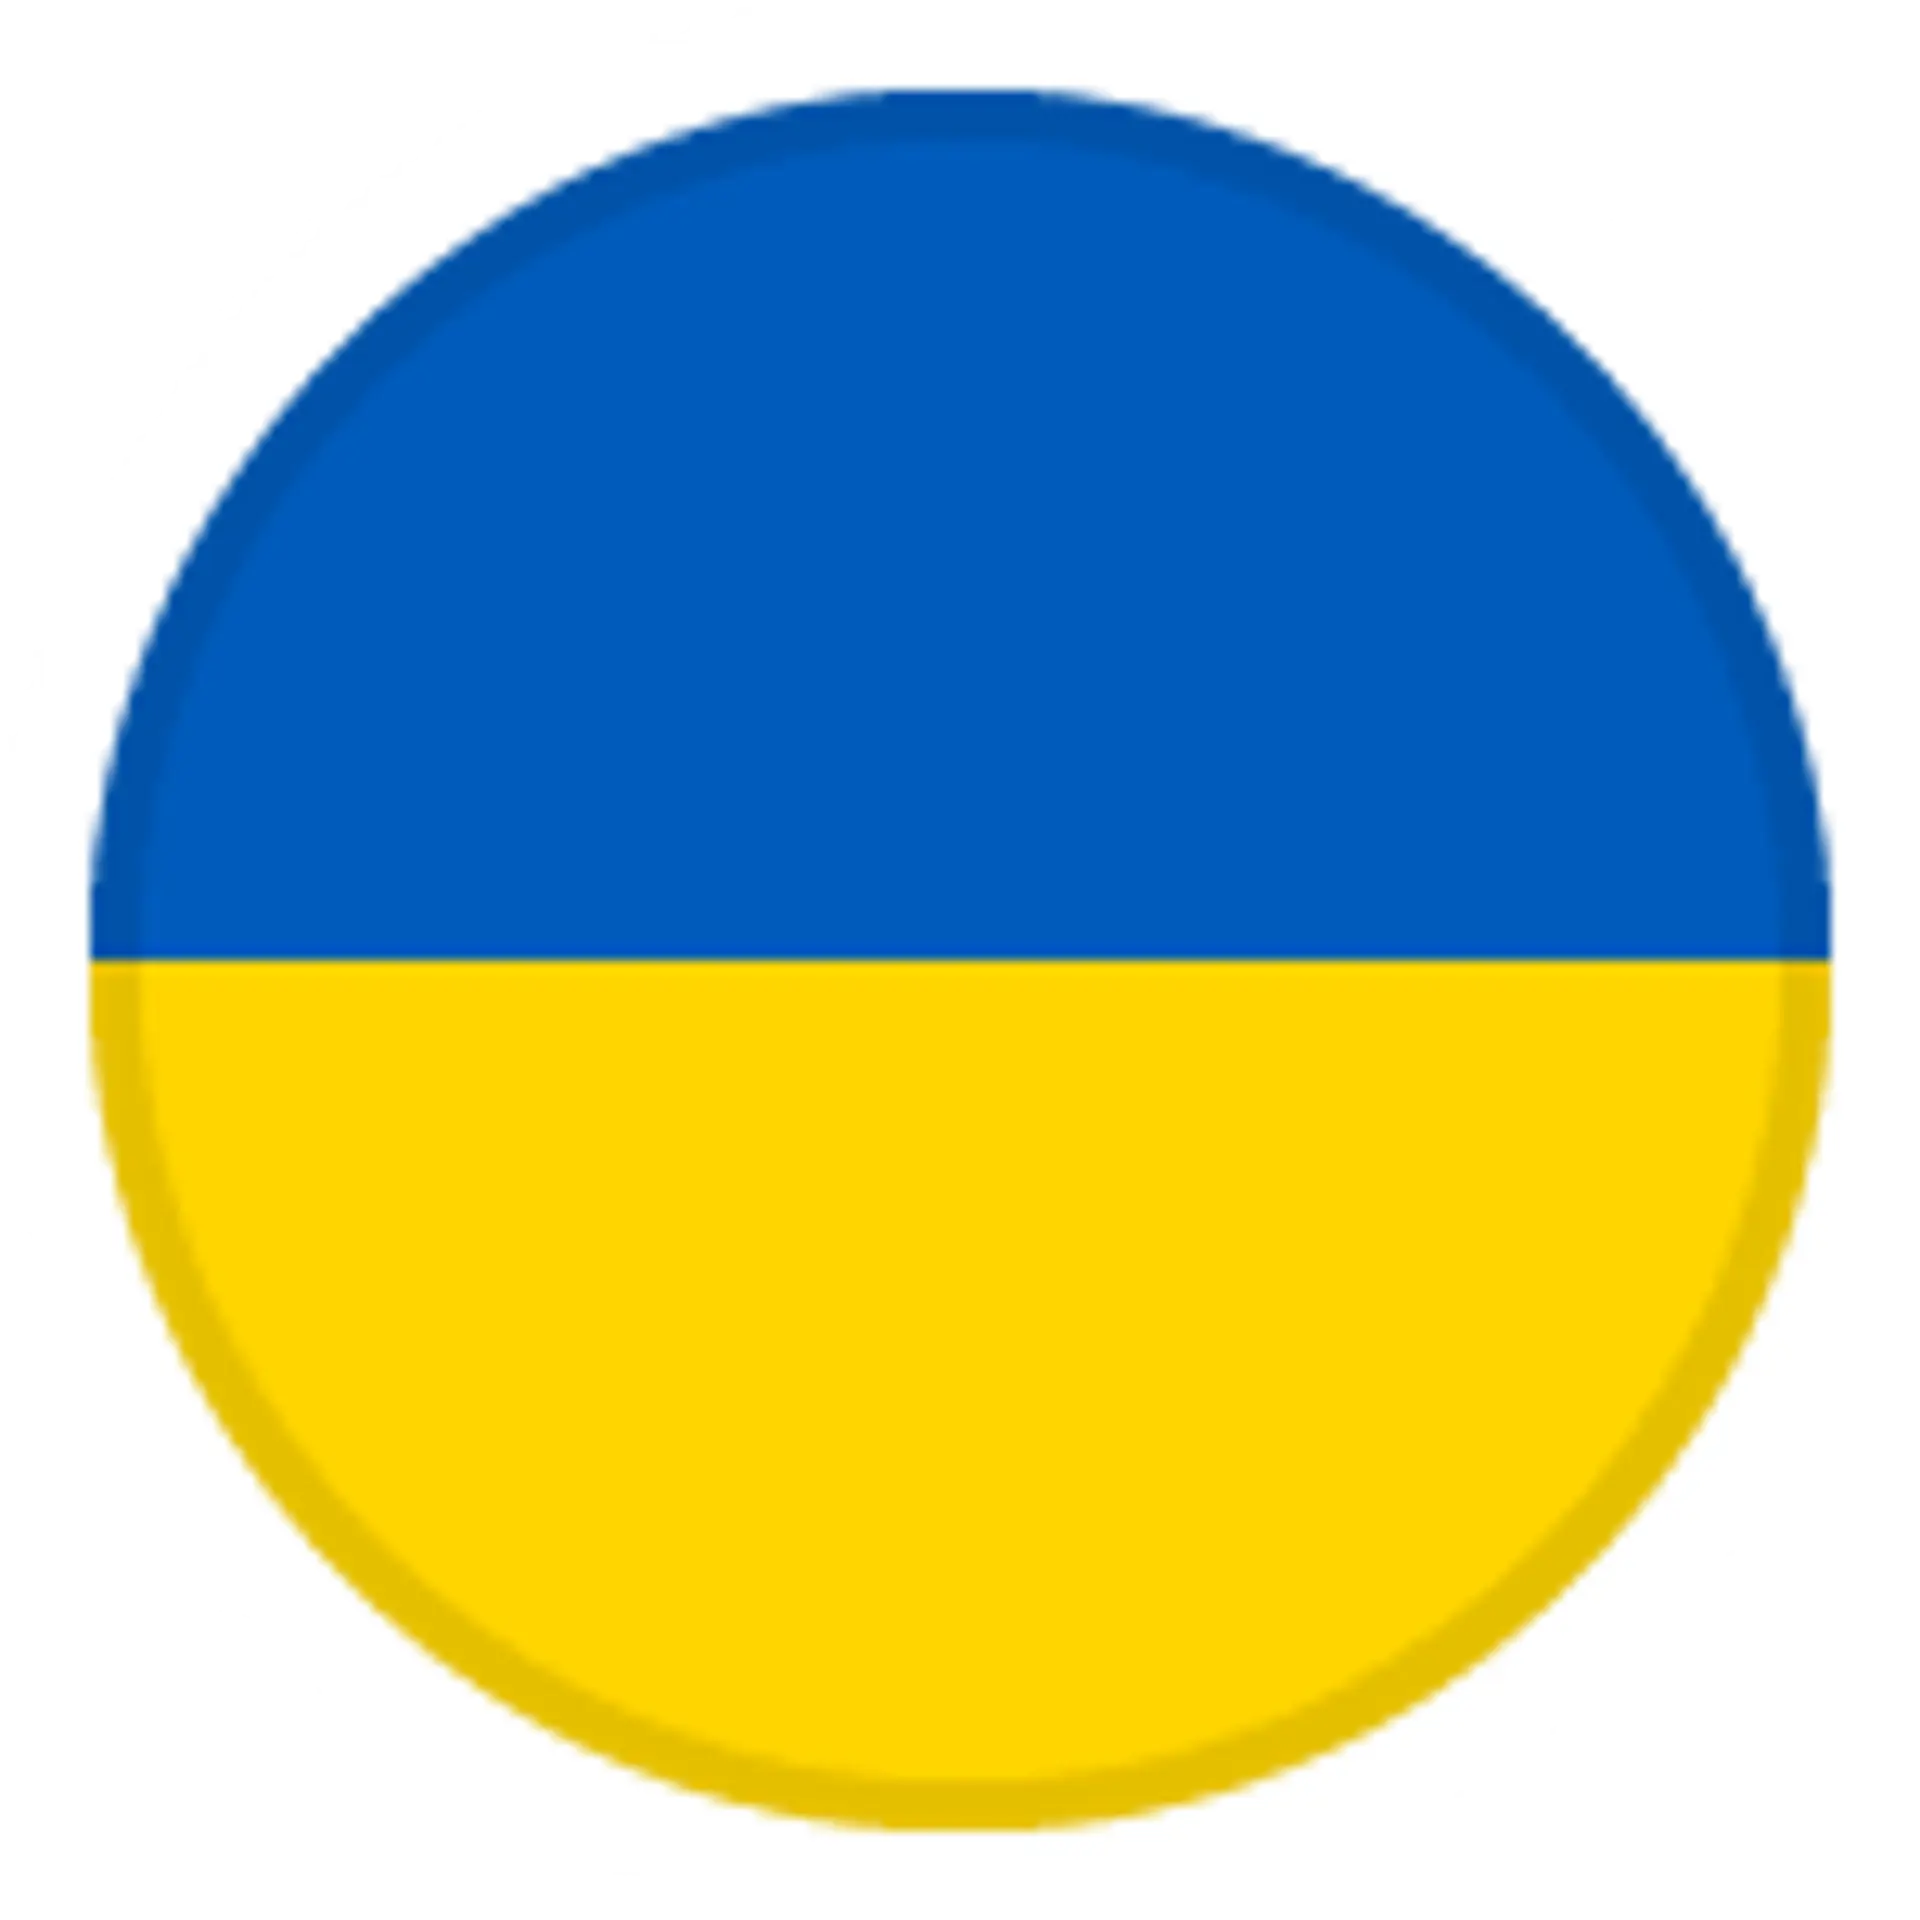 Selección de fútbol de Ucrania